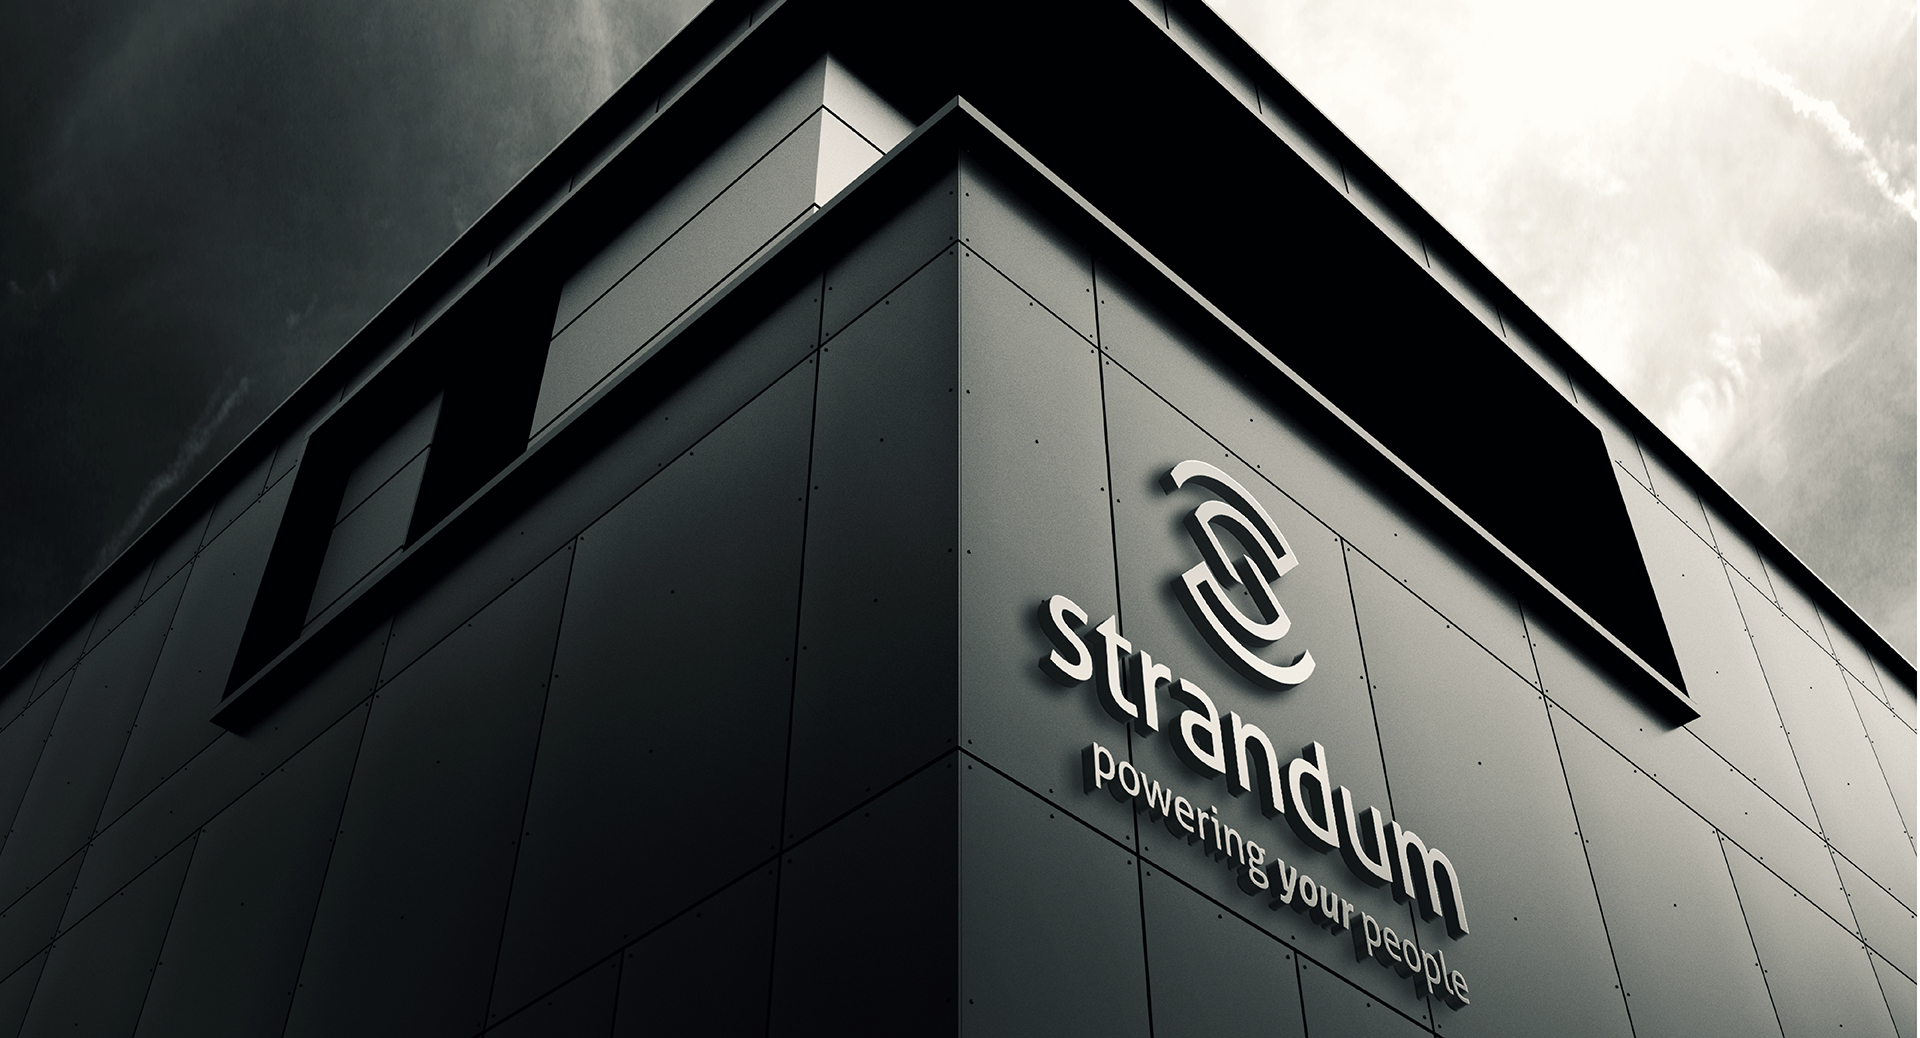 Strandum | Design Minds